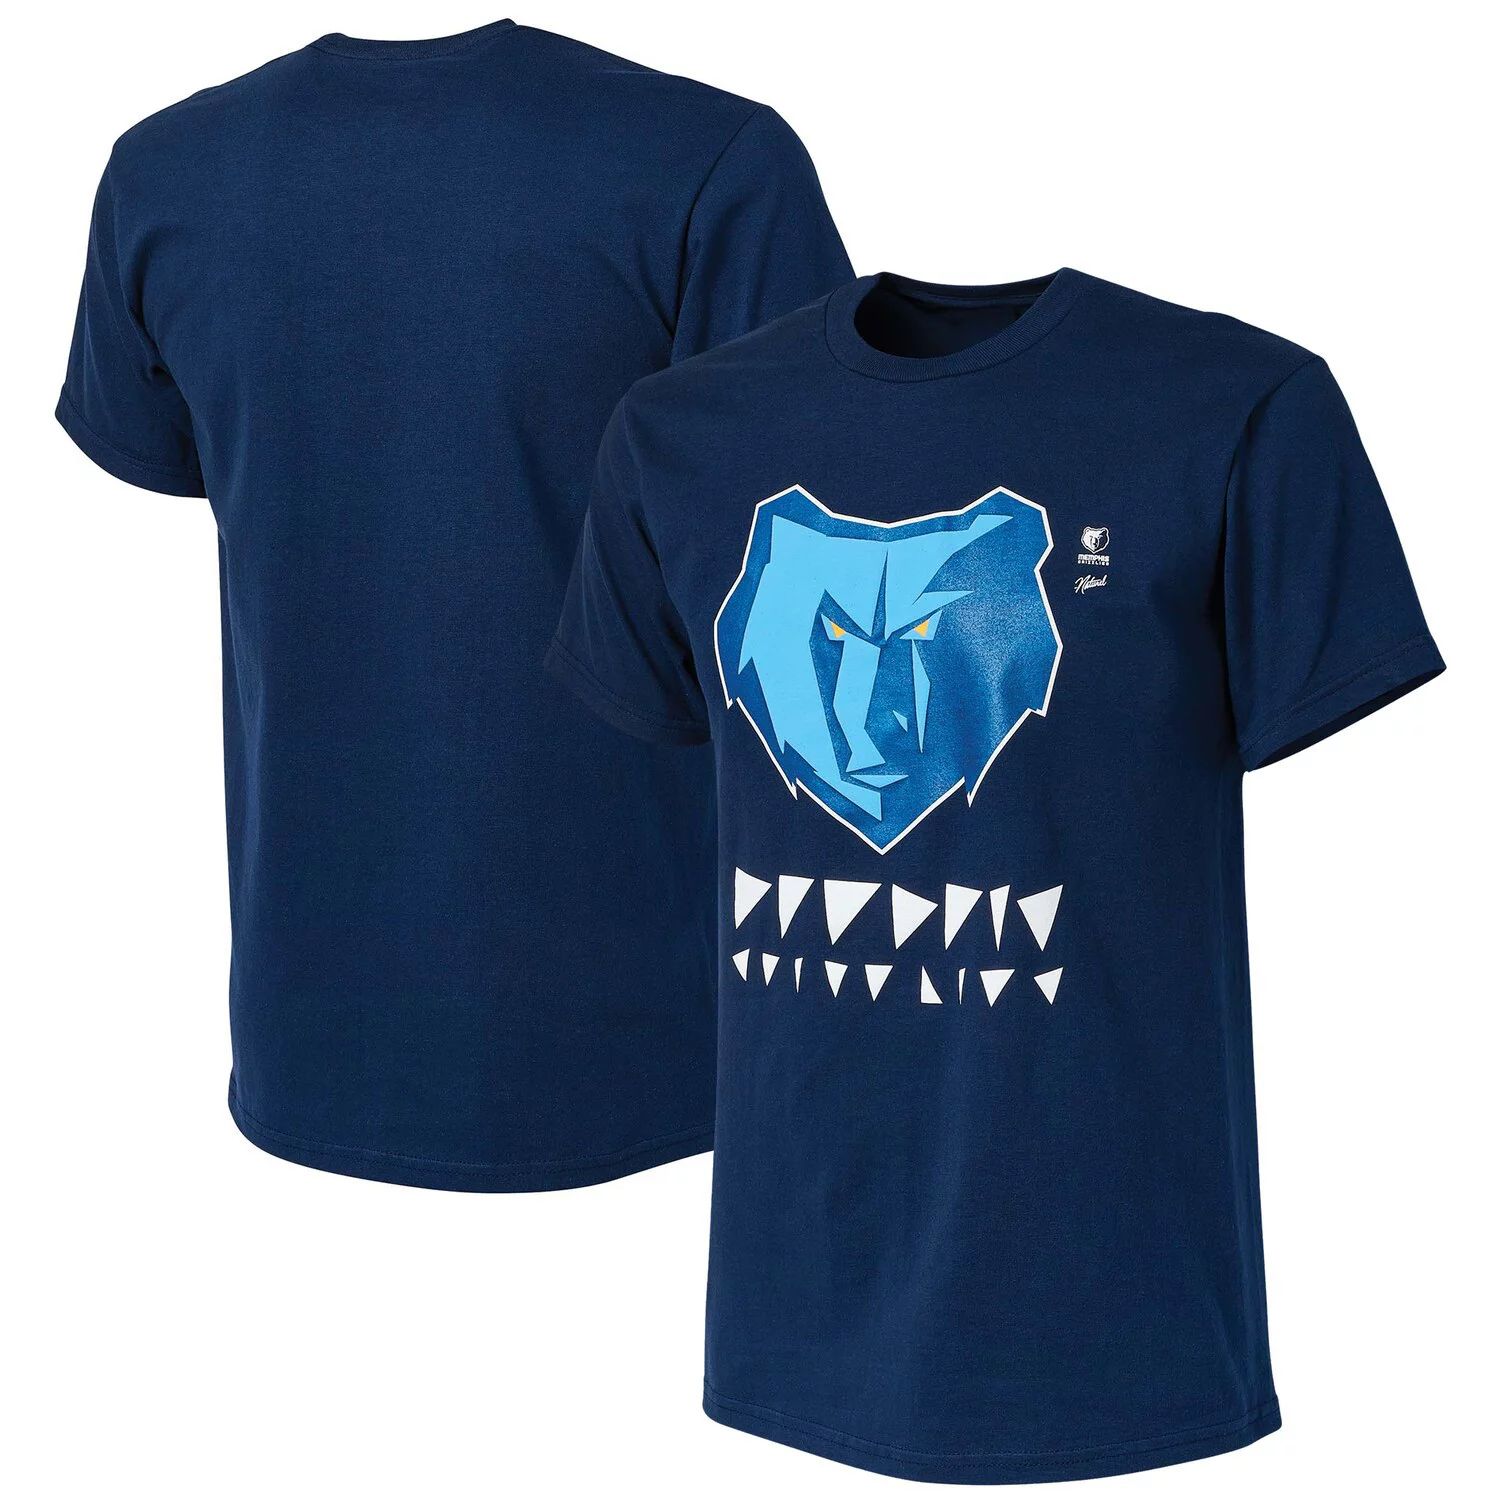 Мужская футболка NBA x Naturel Navy Memphis Grizzlies без идентификатора вызывающего абонента